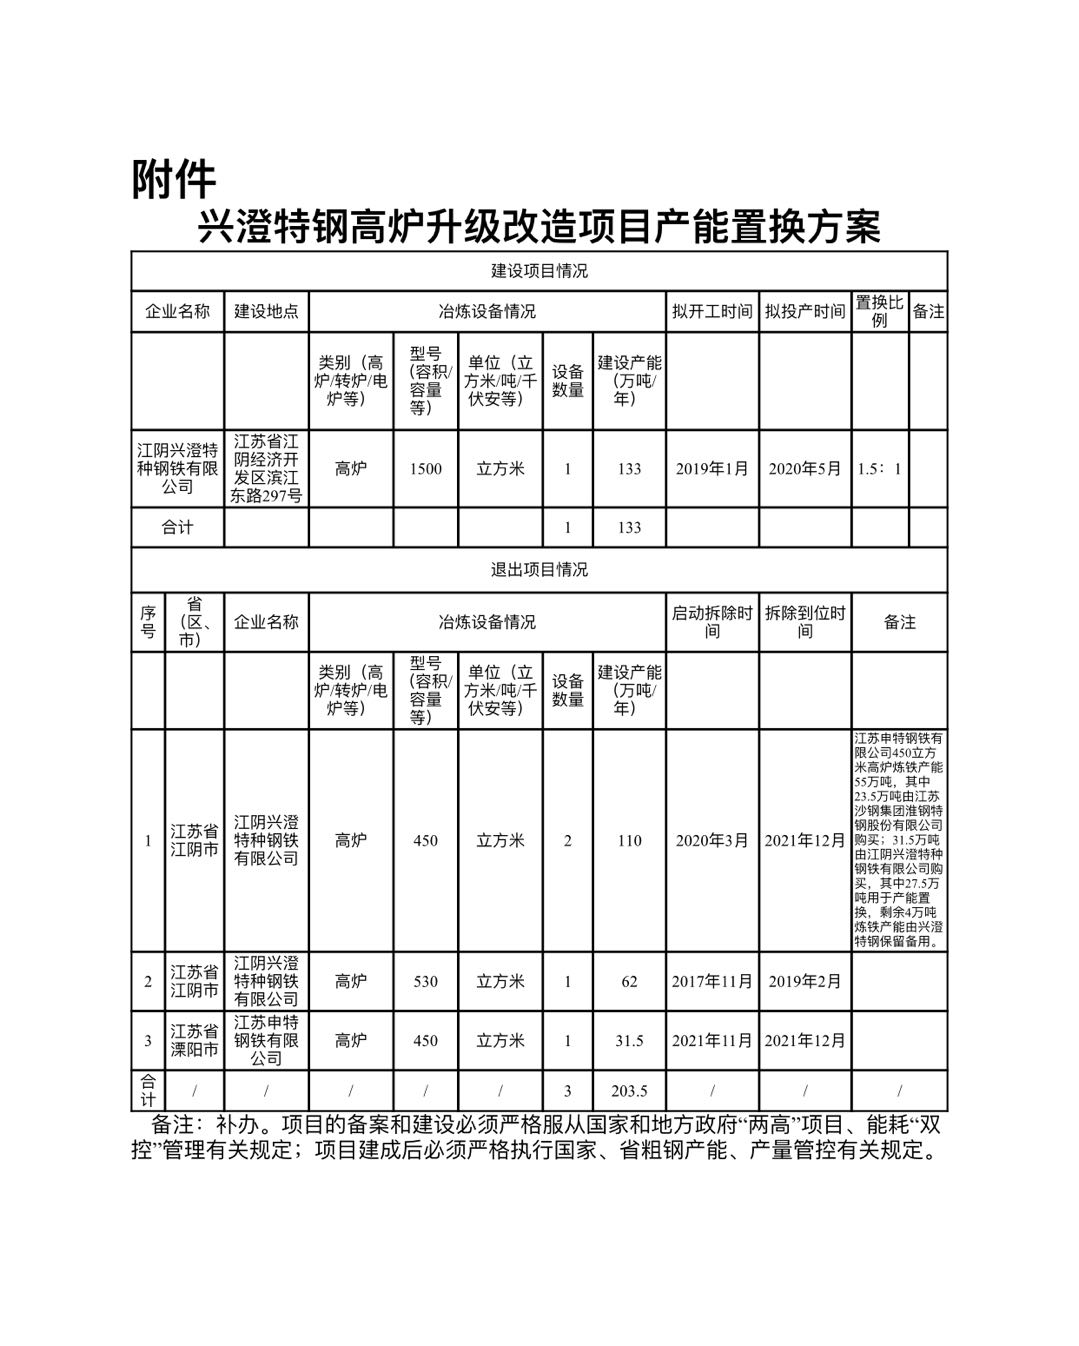 关于江阴兴澄特种钢铁有限公司高炉升级改造项目产能置换方案的公告